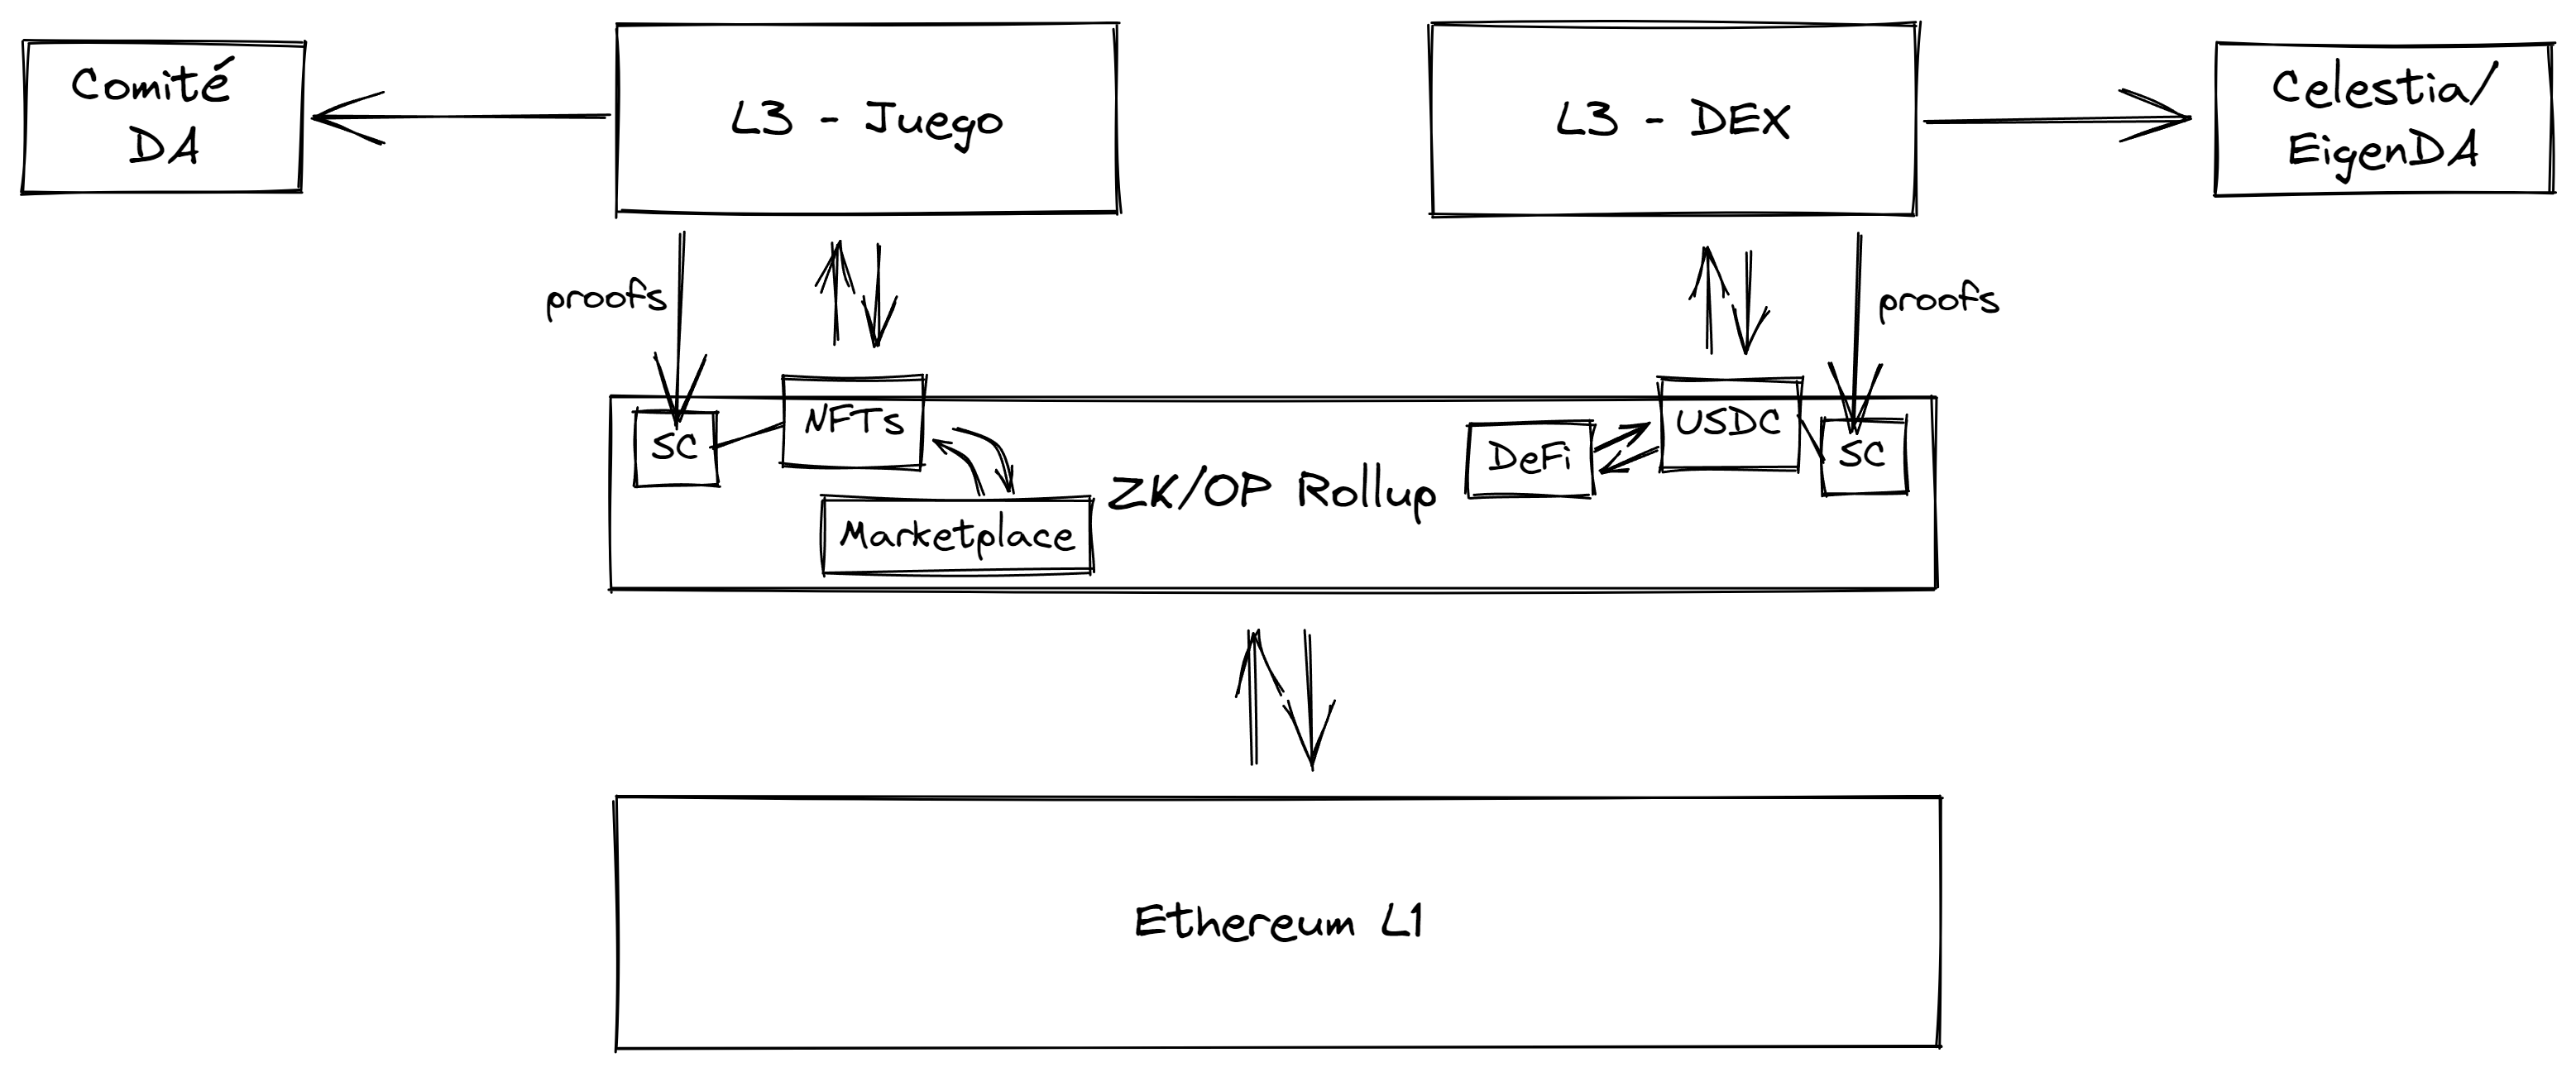 Una L3 tendrá su bridge y sistema de aseguración de la cadena en L2, mientras que máximizará su ahorre de costes publicando transacciones en una capa independiente de Ethereum.